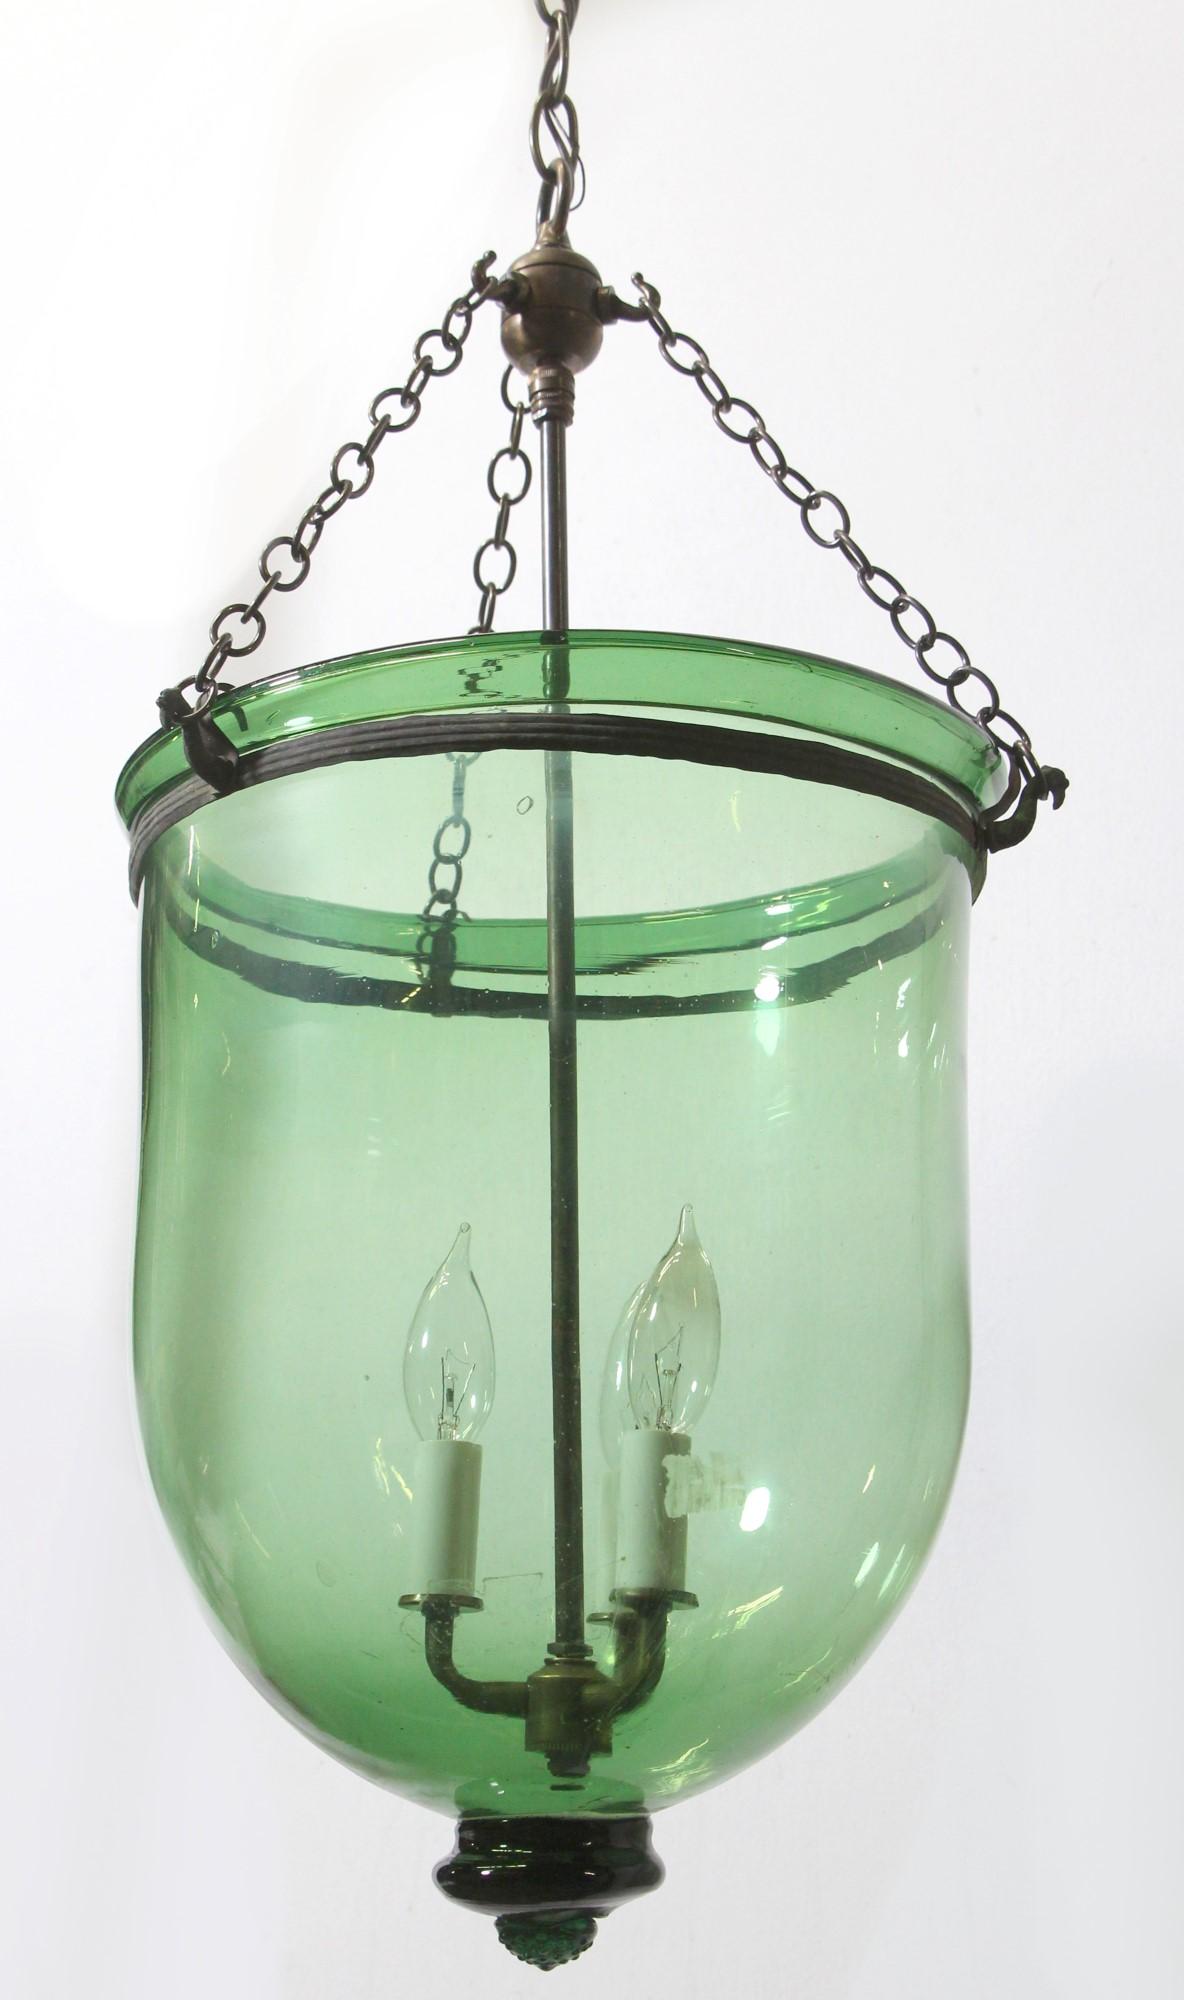 20th Century Hand Blown Green Glass Bell Jar Pendant Light w Brass Hardware + 3 lights